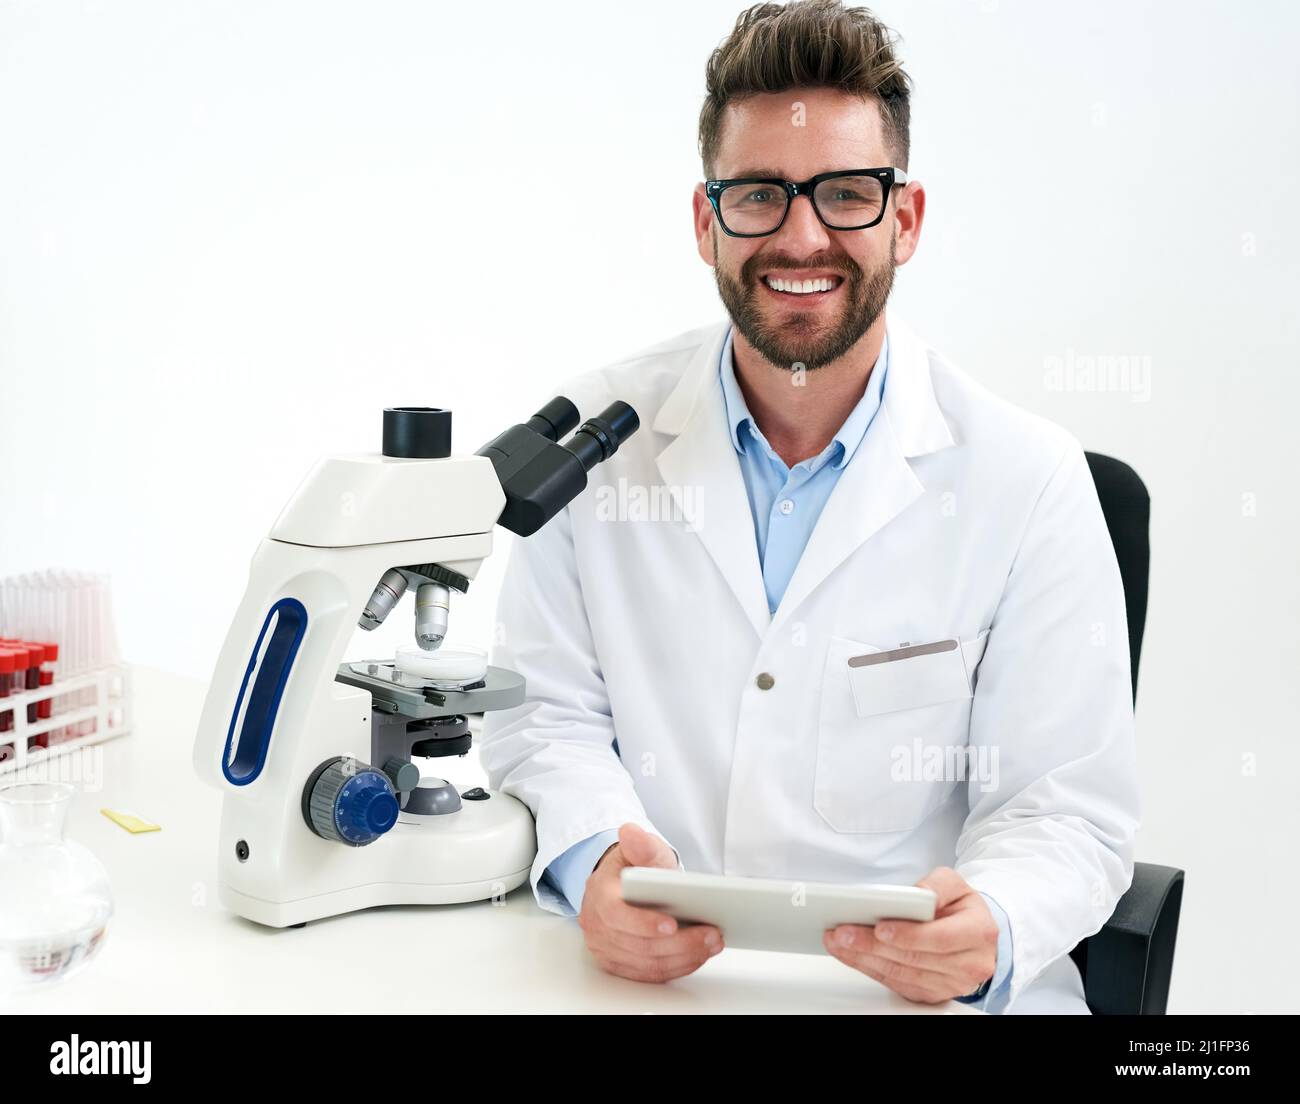 Avanzar en la ciencia y la práctica médica. Retrato de un científico masculino que trabaja en un laboratorio. Foto de stock